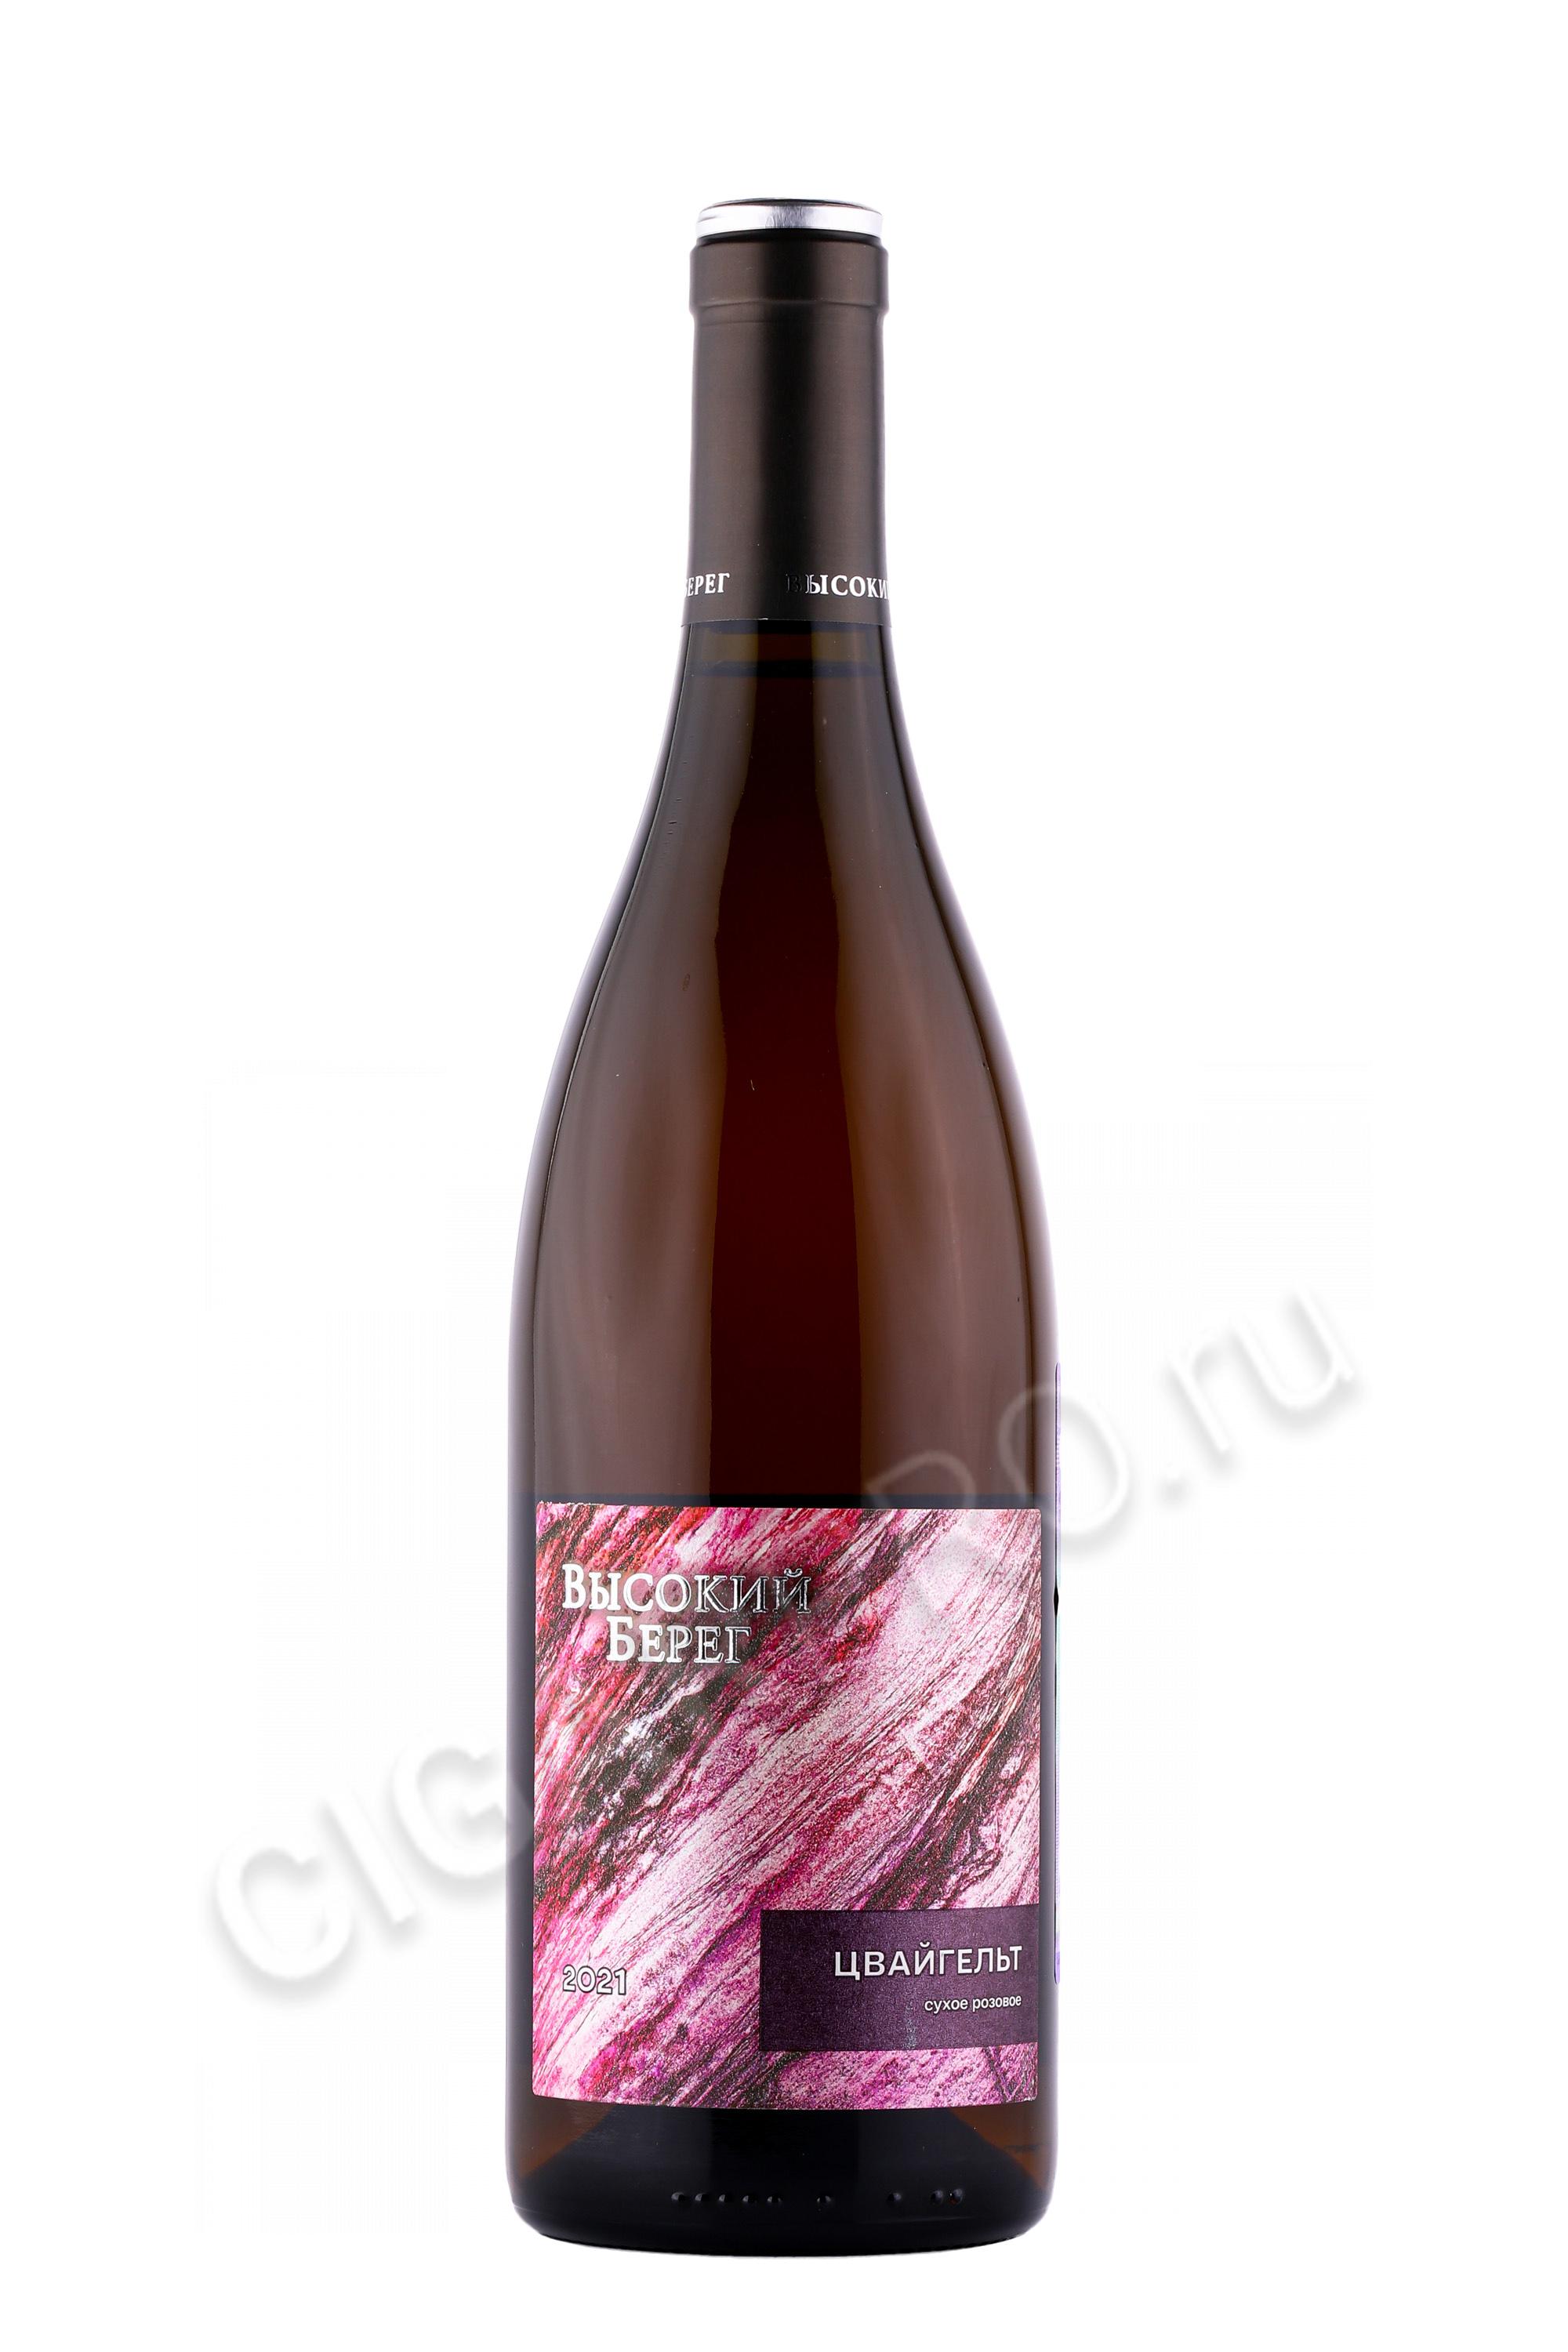 Вино высокий берег Цвайгельт розовое сухое 0.75л. Кубань-вино сухое розовое «высокий берег Цвайгельт». Вино высокий берег Цвайгельт розовое сухое 0.75л Кубань-вино. Вино Цвайгельт розовое сухое.